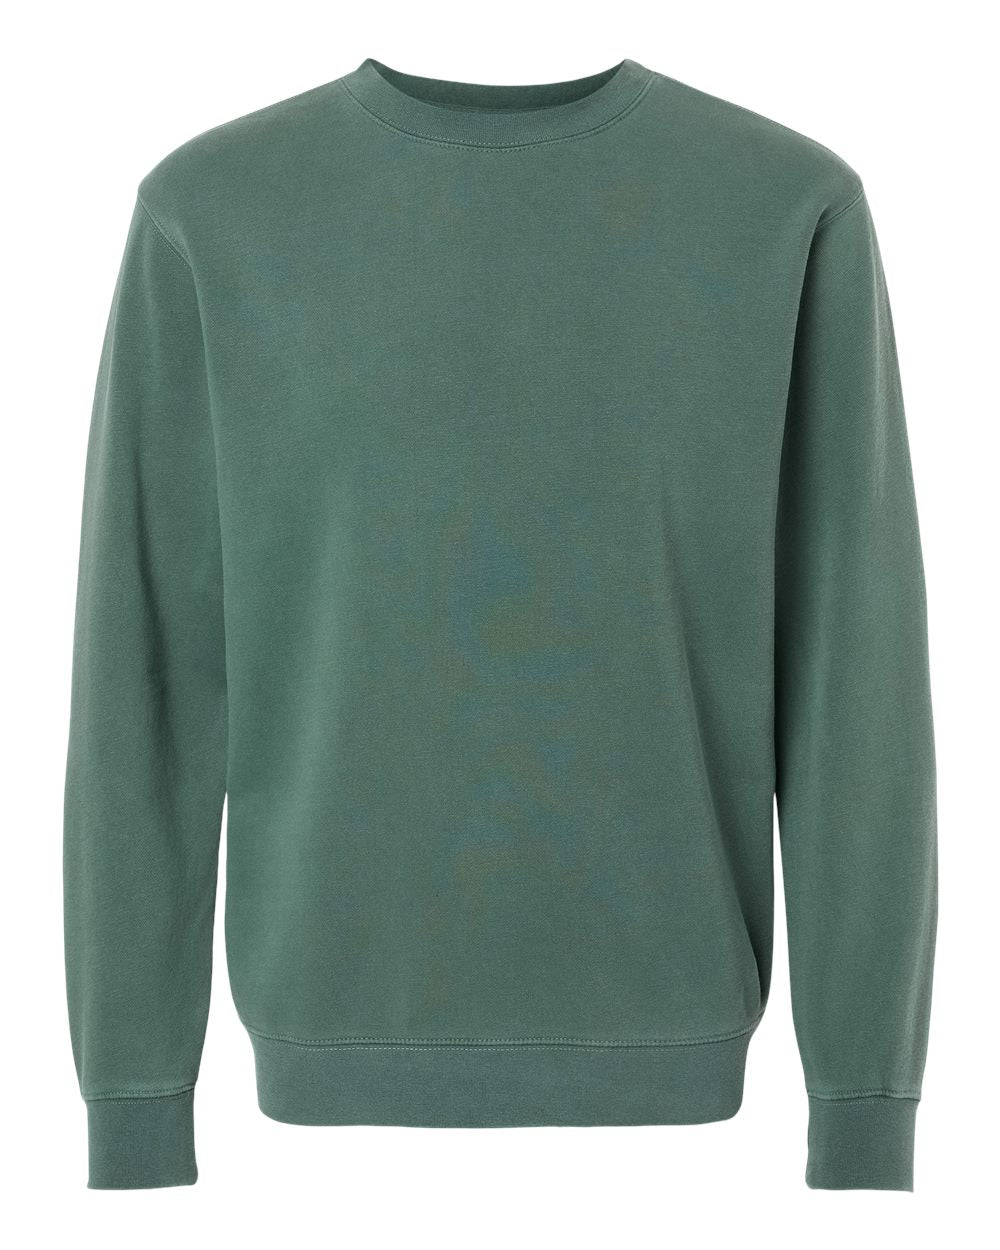 Independent Pigment-Dyed Crewneck Sweatshirt (PRM3500) in Pigment Alpine Green